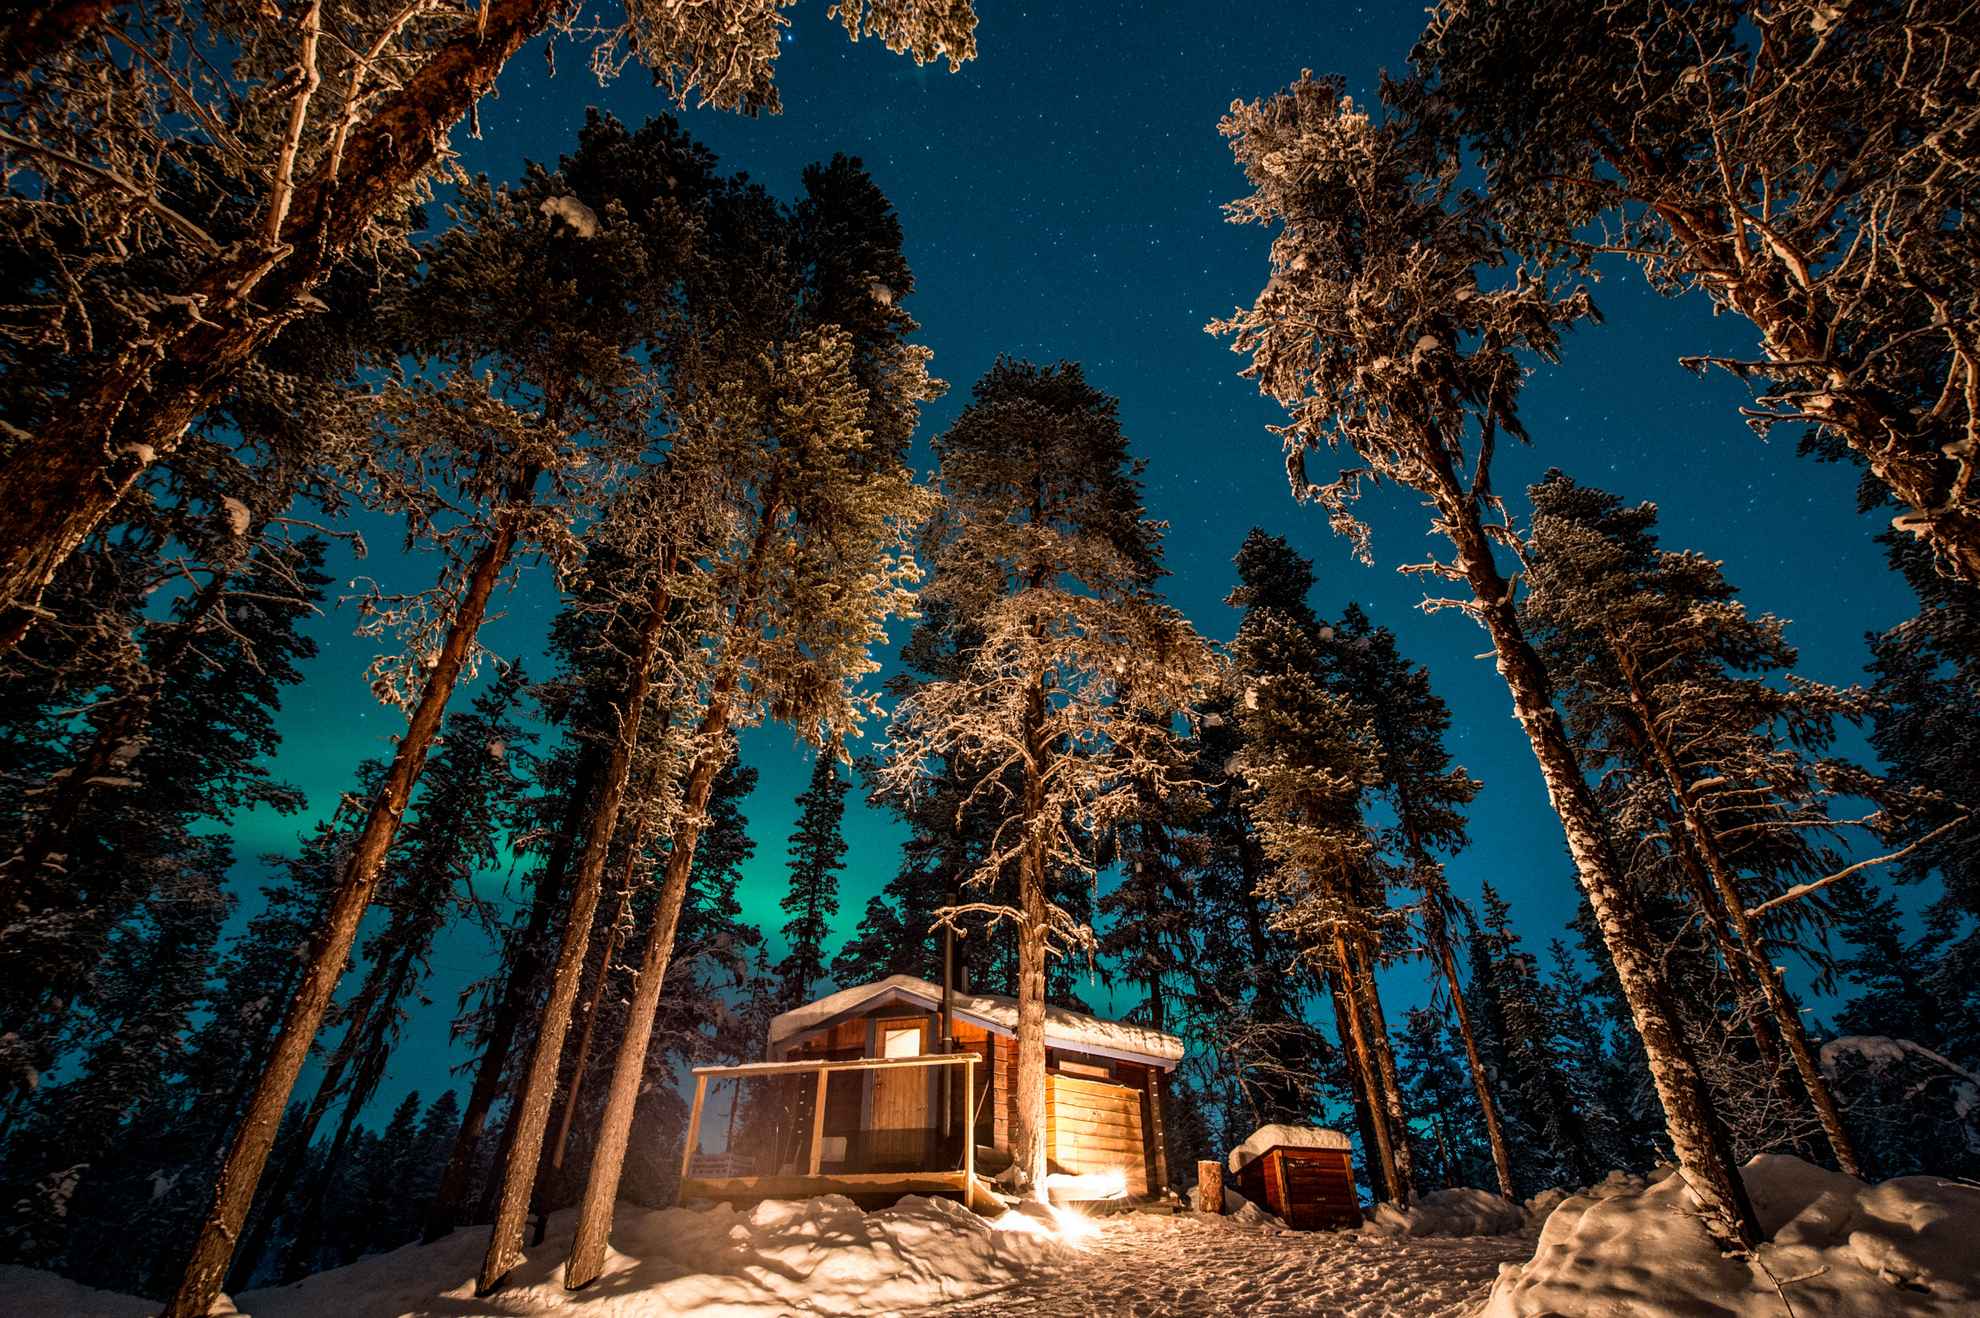 Die Bäume ragen in den sternenklaren Himmel. Eine Winterhütte mit einem vom Schnee bedeckten Dach steht im Vordergrund.